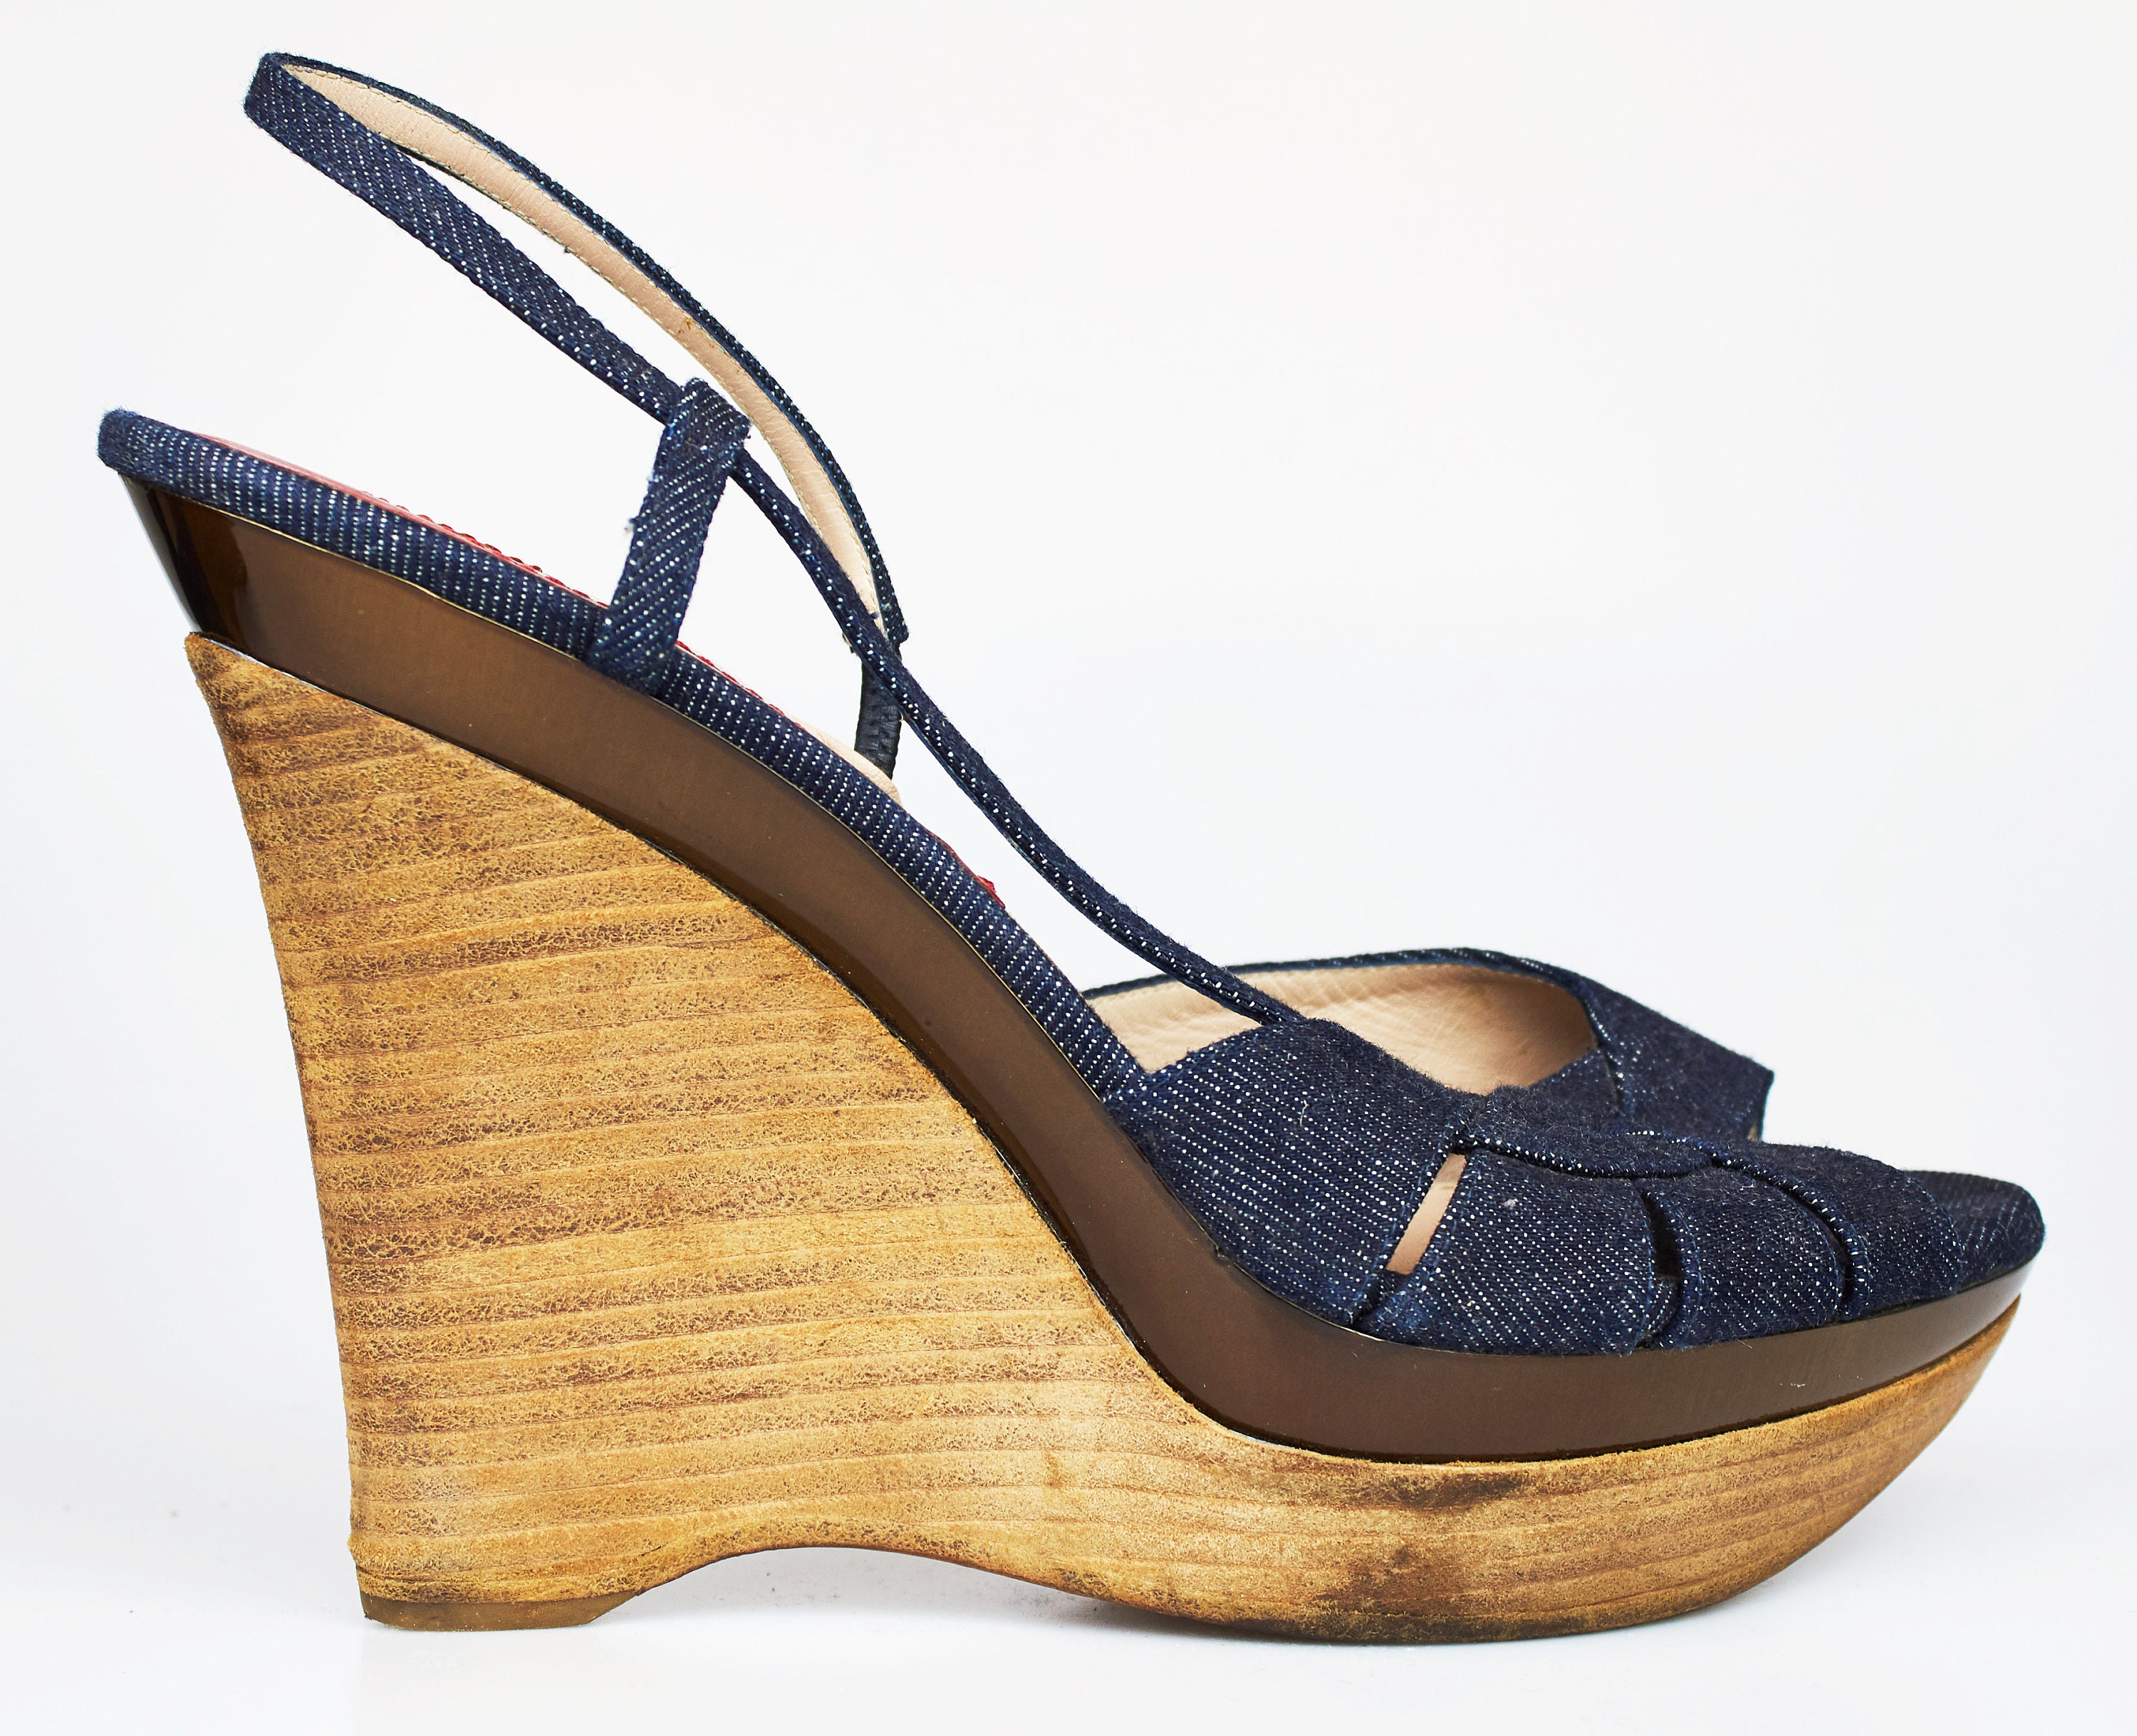 Vintage Brioni denim blue high heel wooden platform sandals | Etsy